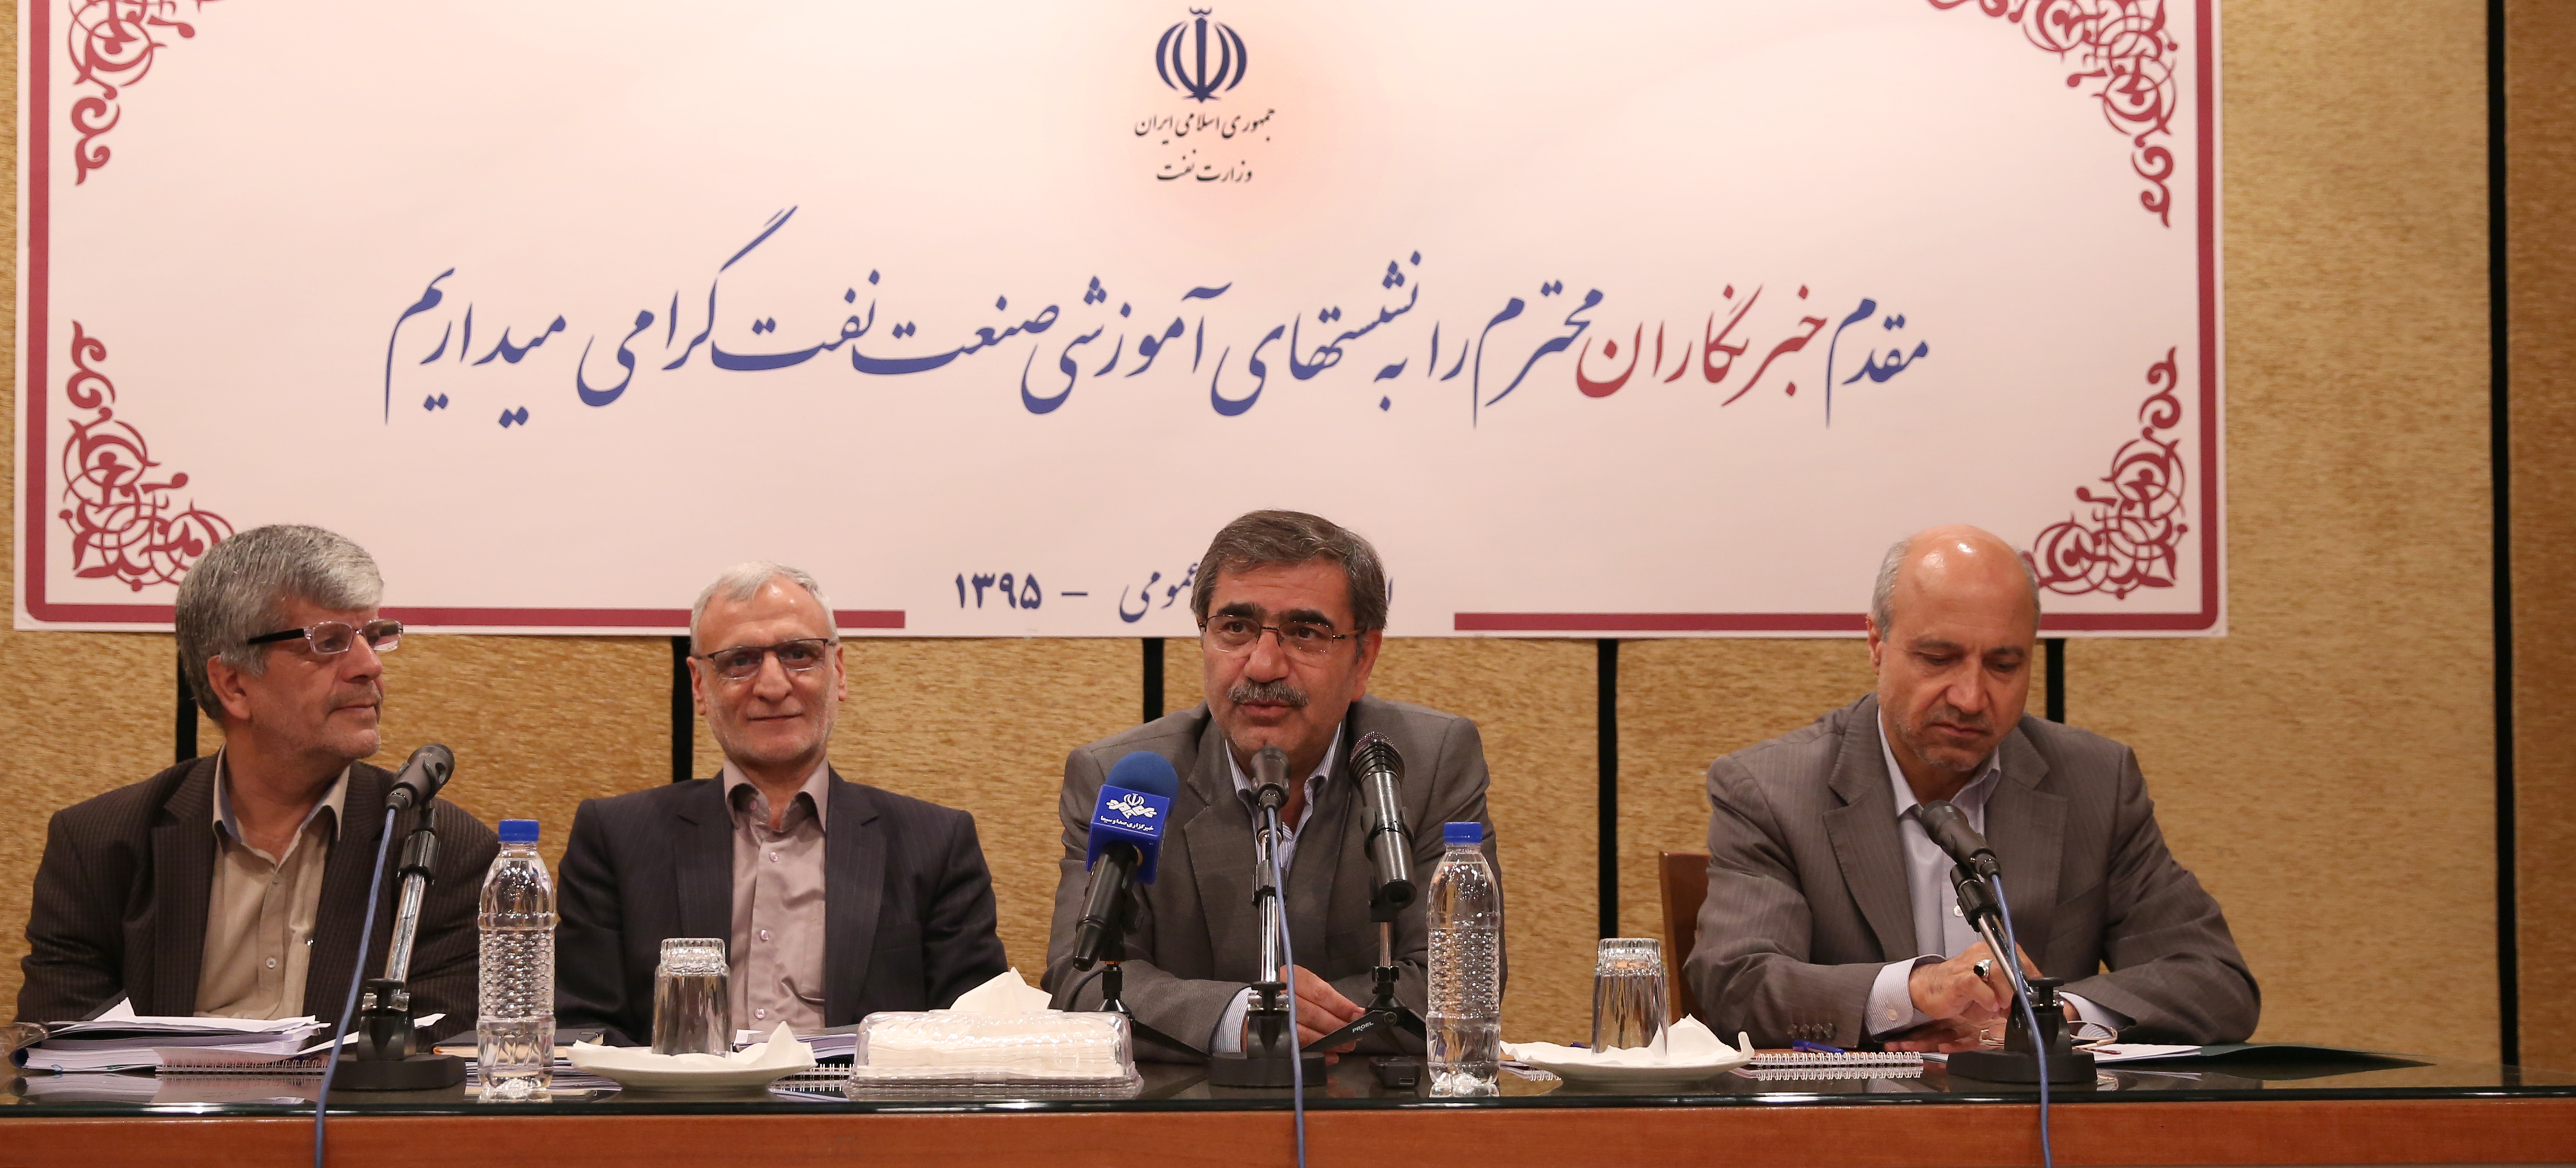 نشست آموزشی صنعت نفت با حضور مدیرعامل شرکت ملی گاز ایران برگزار شد